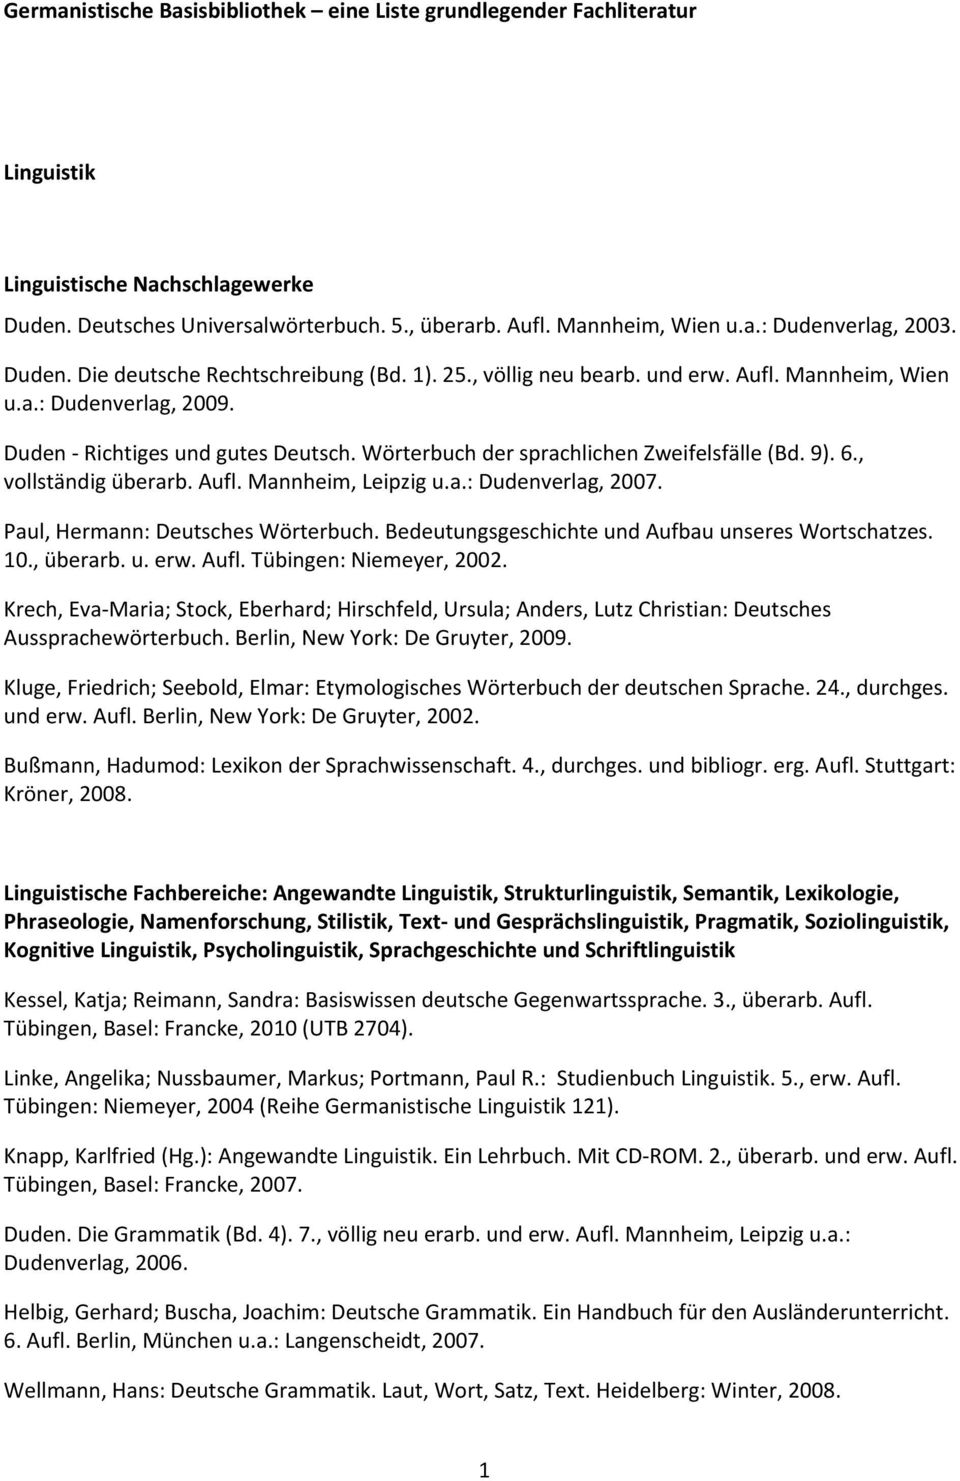 Paul,Hermann:DeutschesWörterbuch.BedeutungsgeschichteundAufbauunseresWortschatzes. 10.,überarb.u.erw.Aufl.Tübingen:Niemeyer,2002.